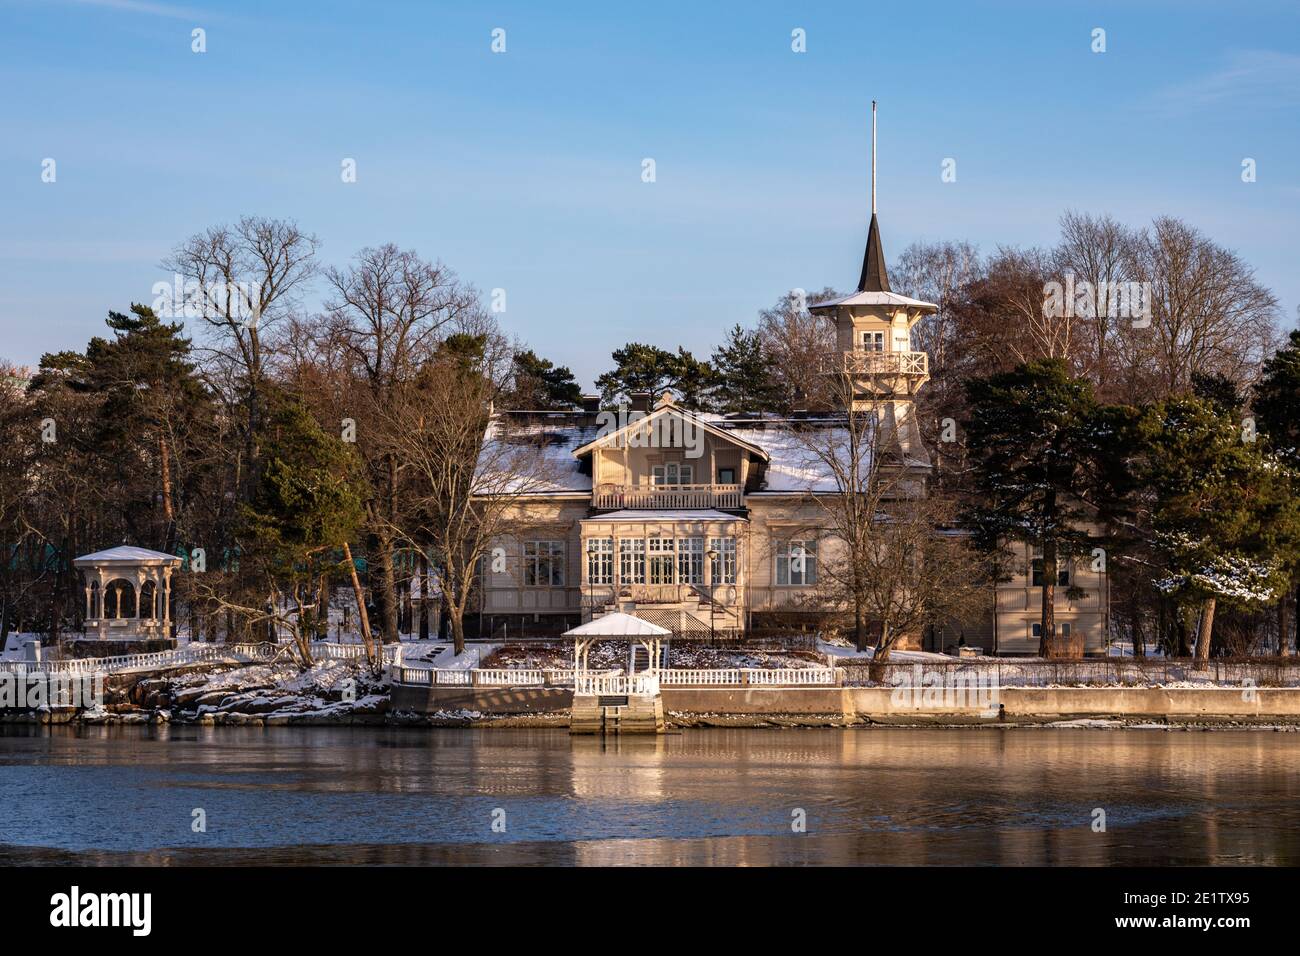 Kesäranta - offizielle Residenz des finnischen Ministerpräsidenten Im Stadtteil Meilahti in Helsinki Stockfoto